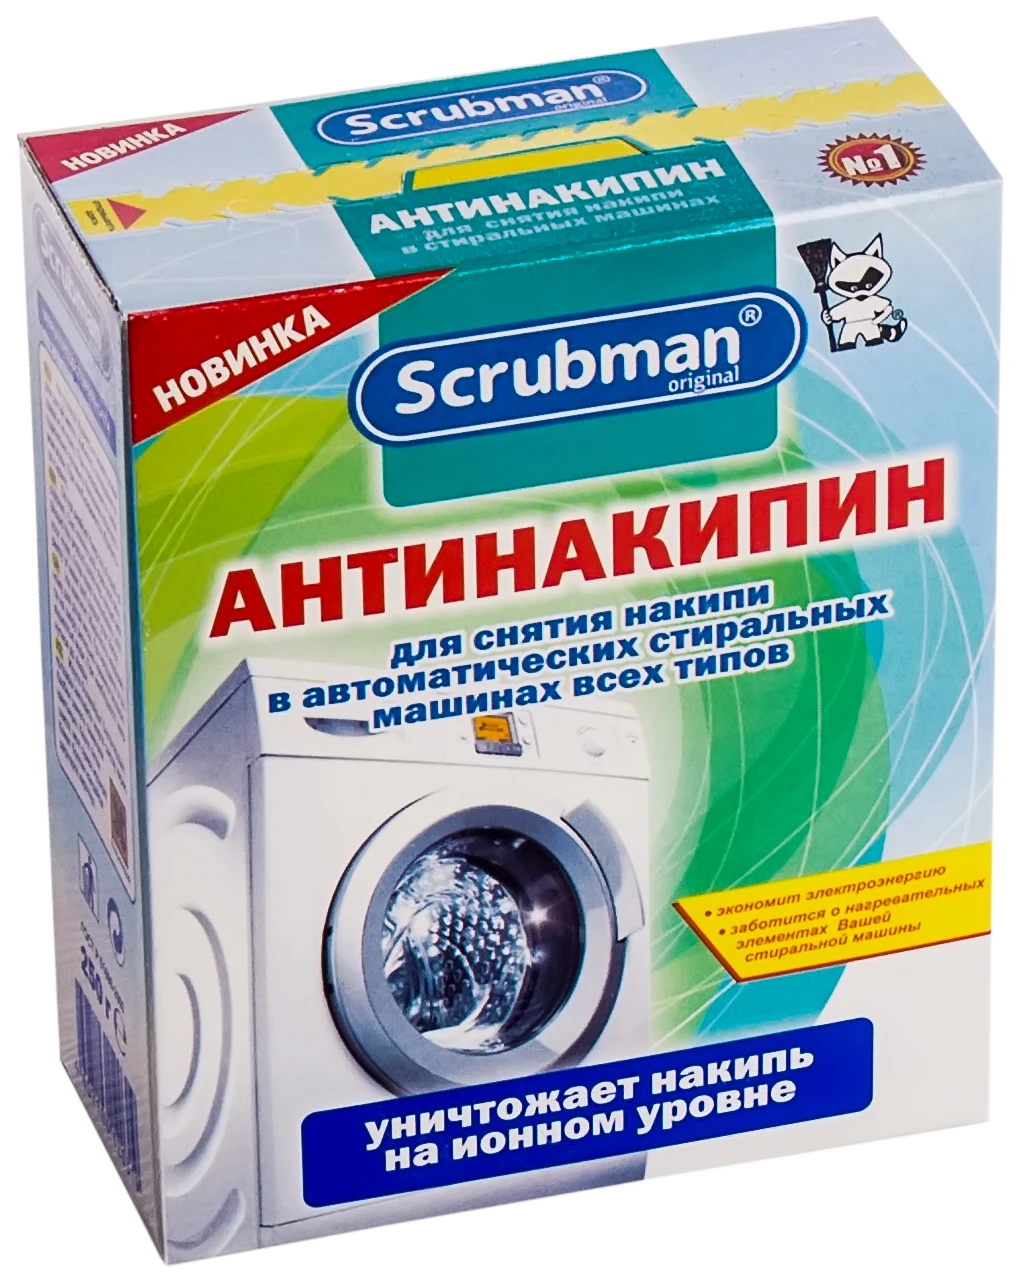 Scrubman Средство для чистки стиральных машин 250гр.